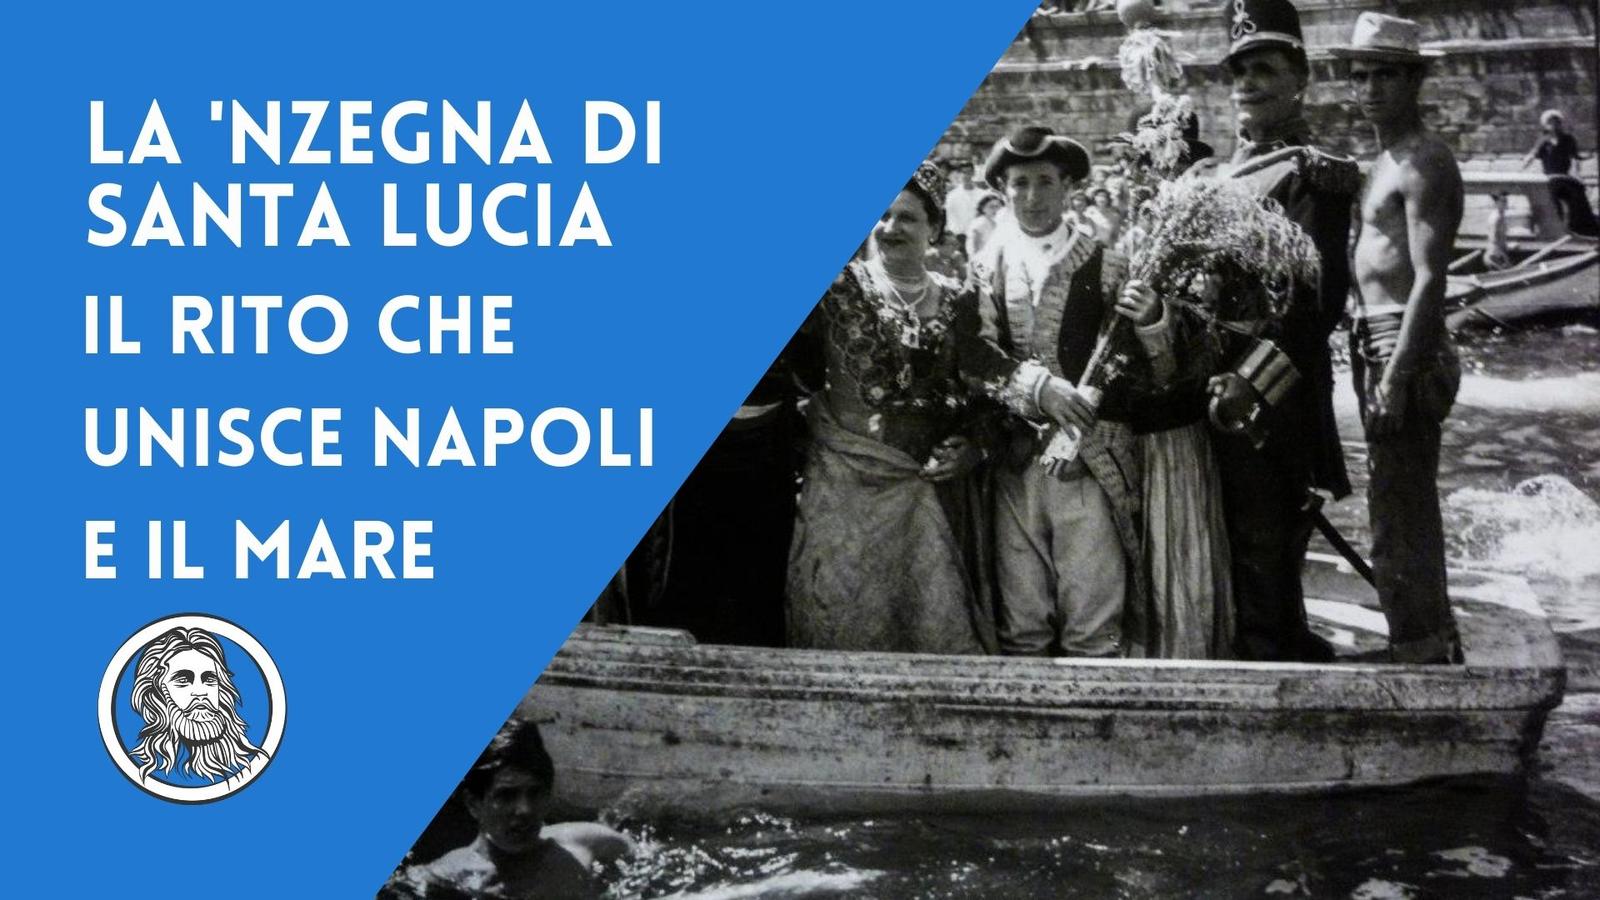 La festa della 'nzegna di Santa Lucia, il rito che unisce Napoli e il mare